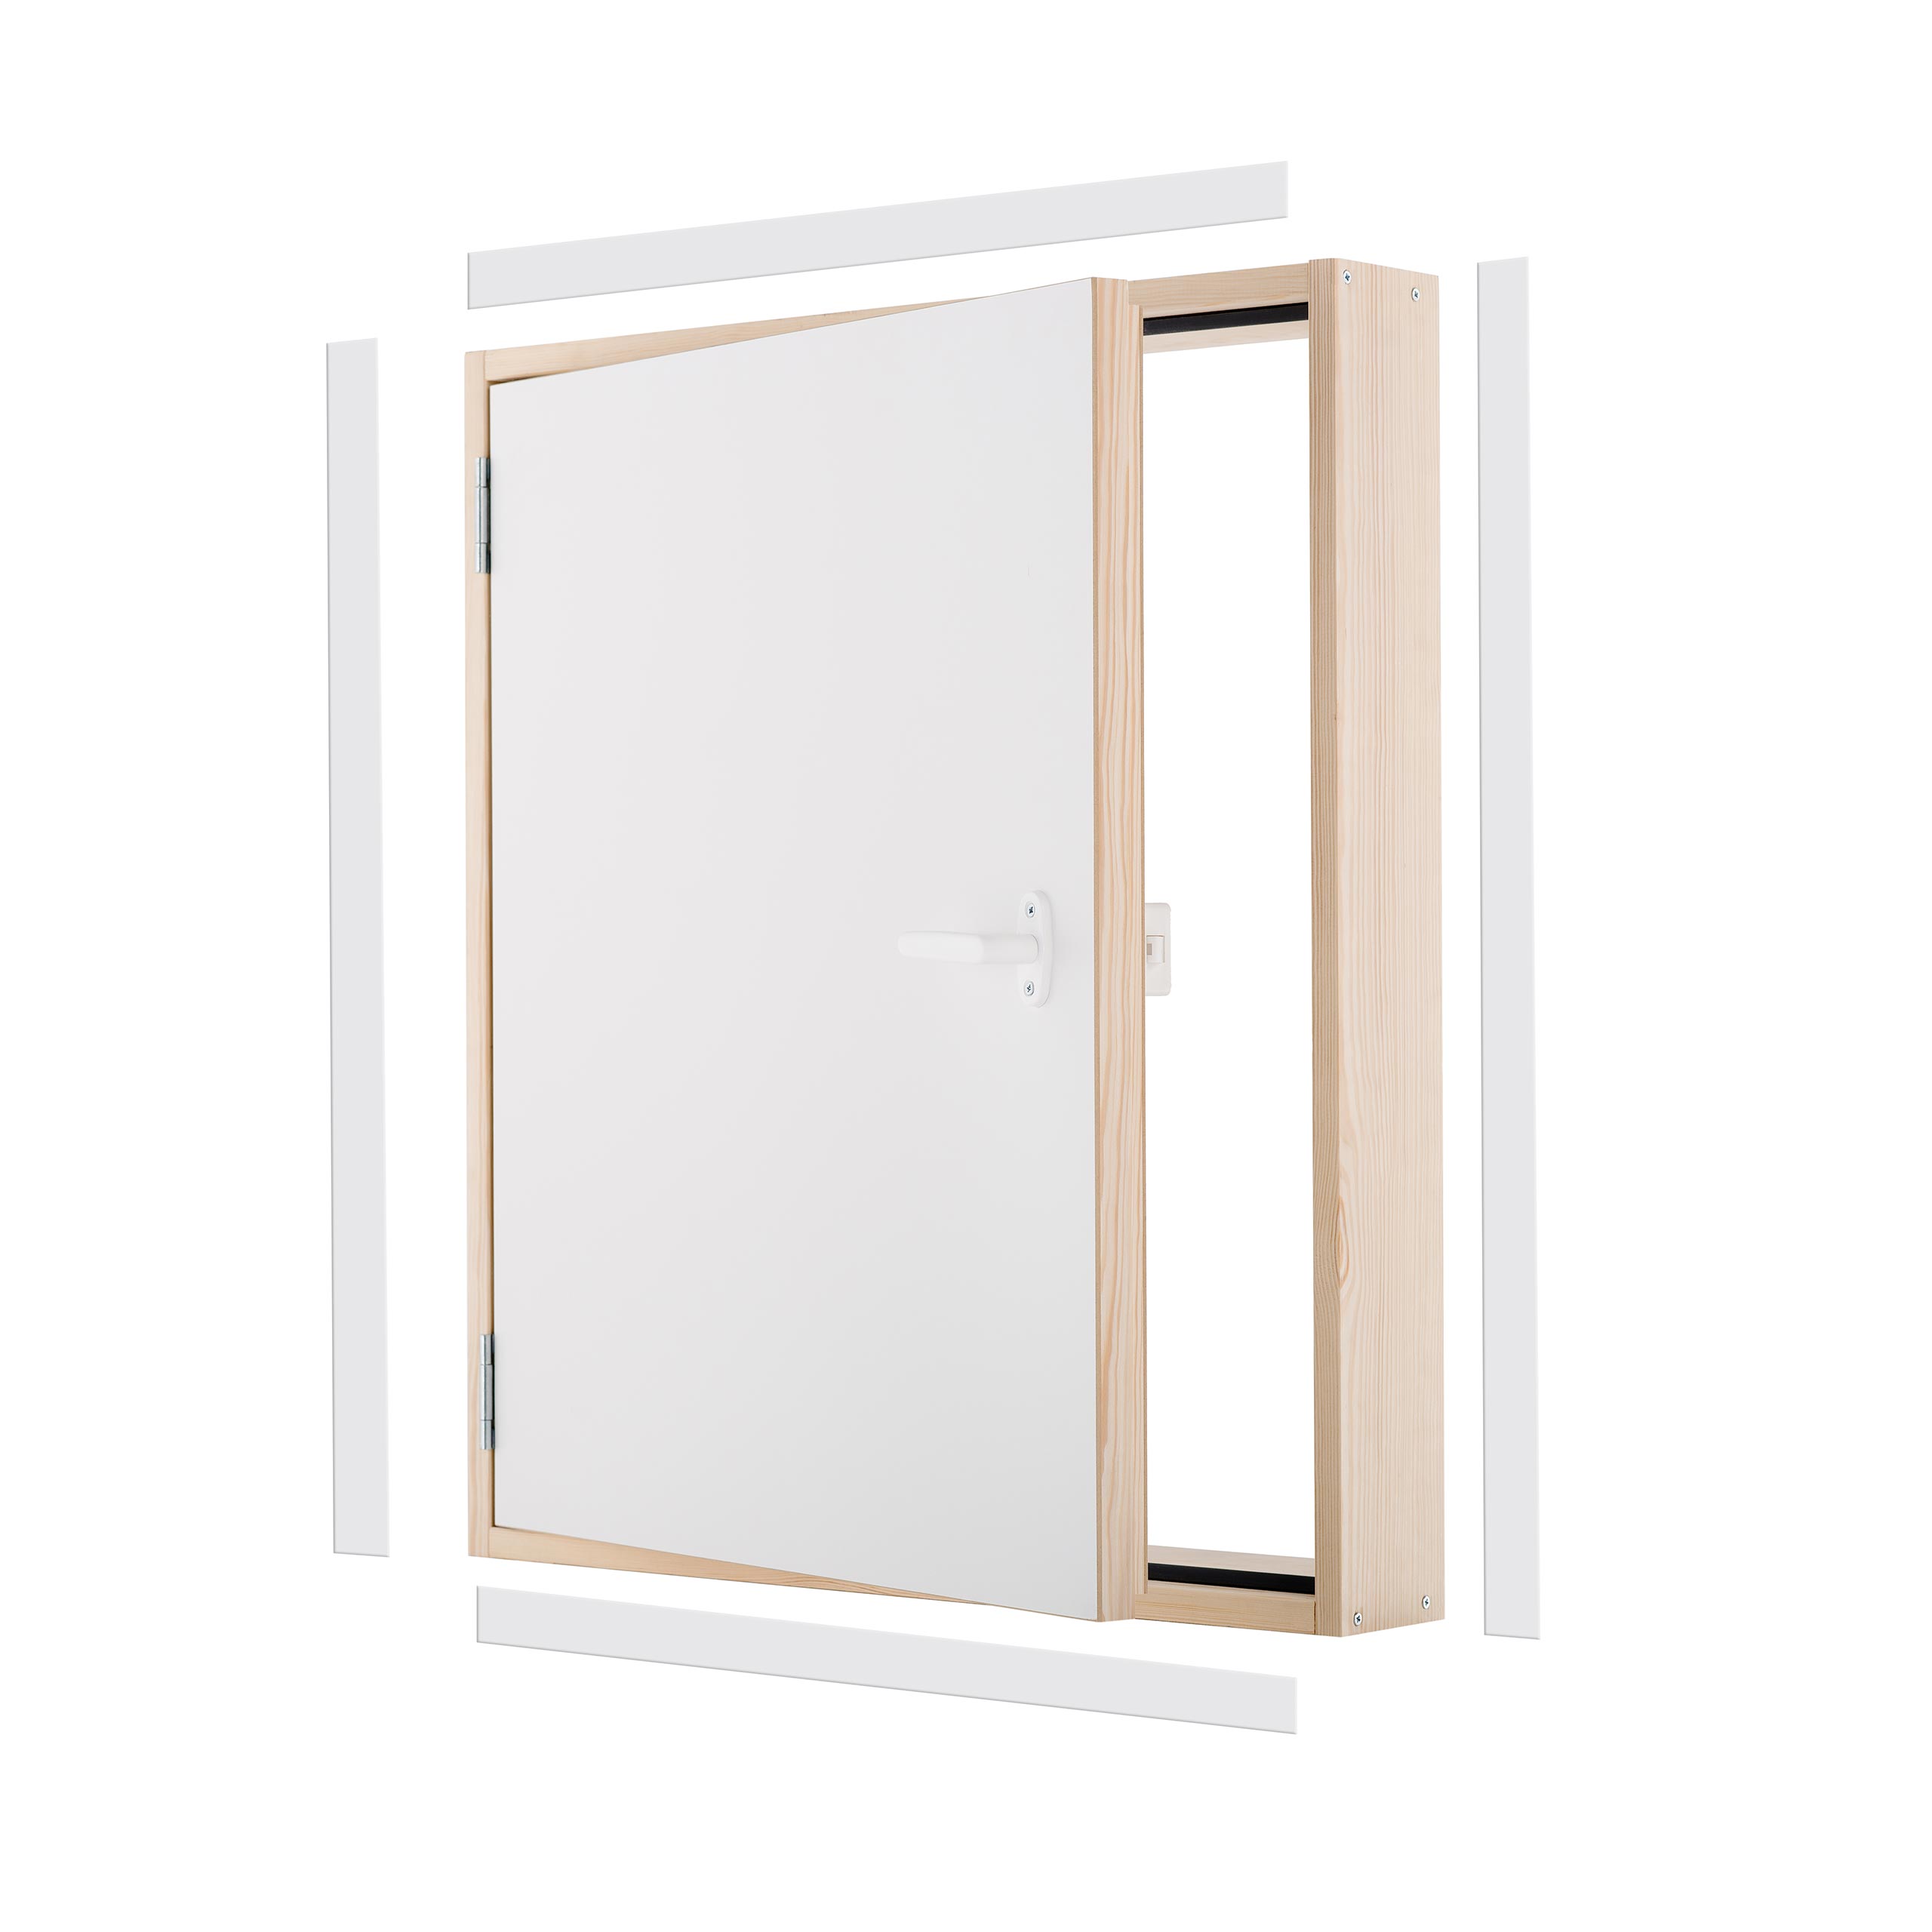 L-shaped door DK EXTRA 110x60